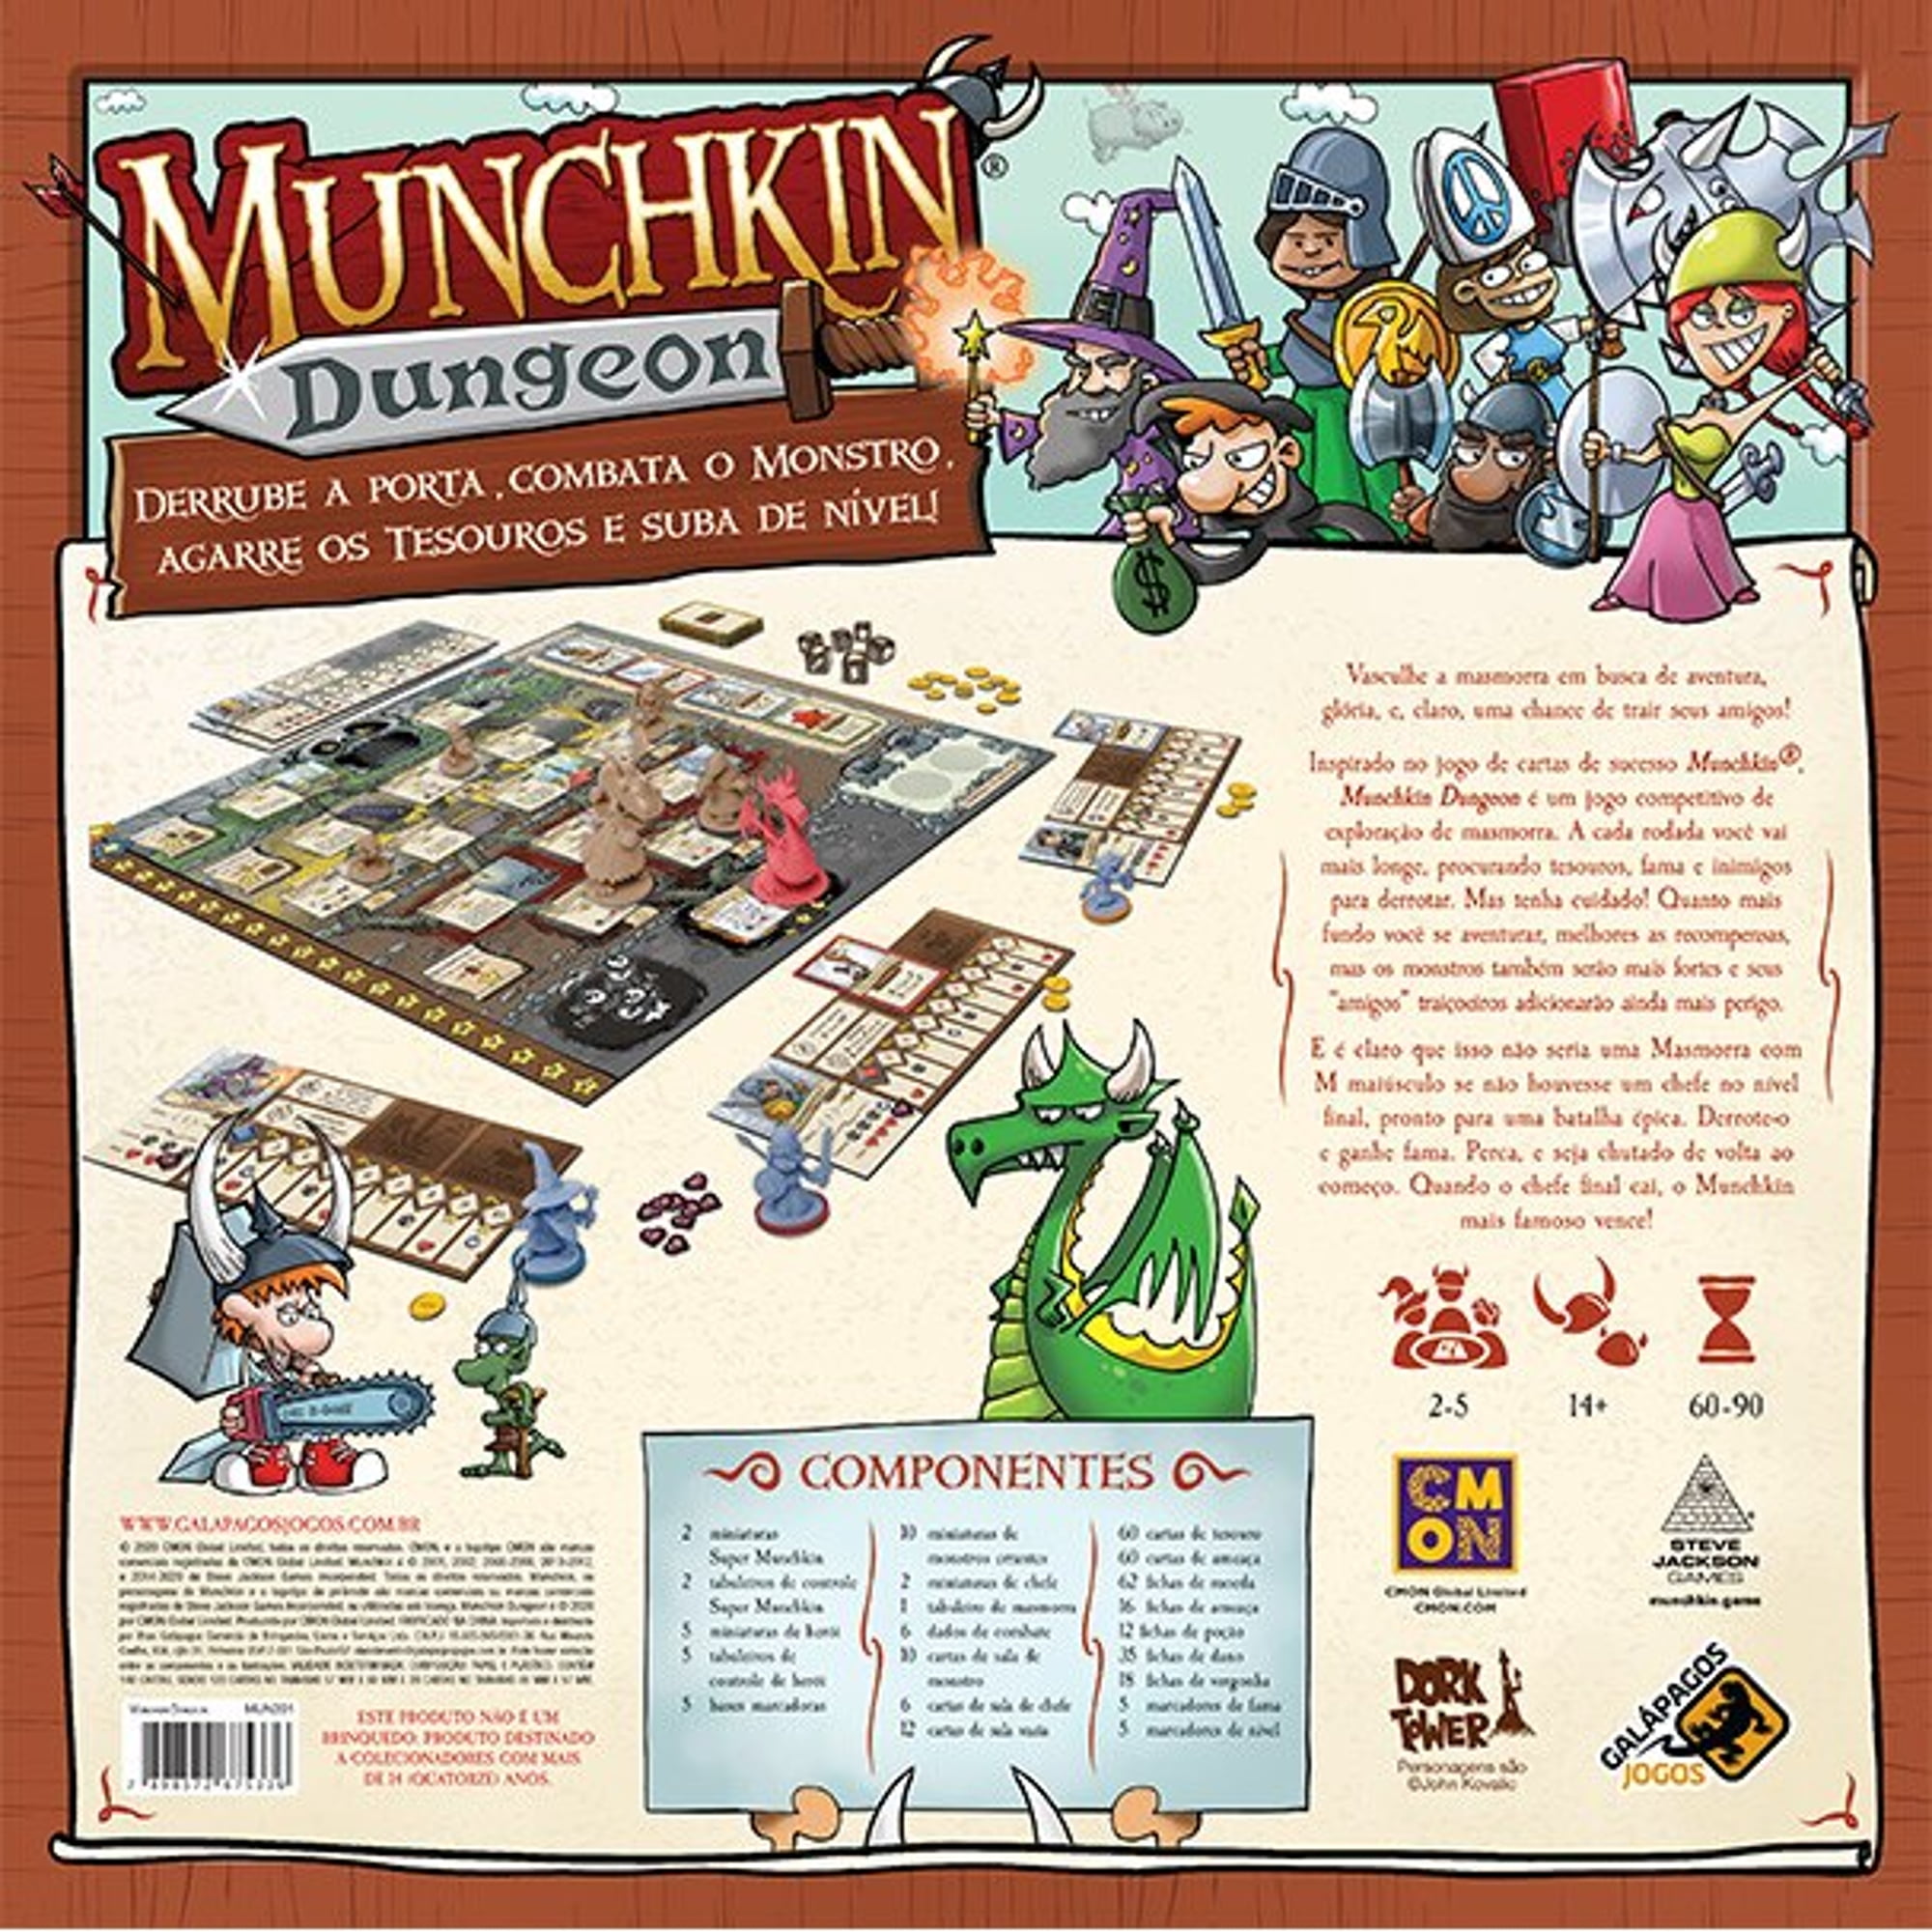 Munchkin Quest - La fortaleza